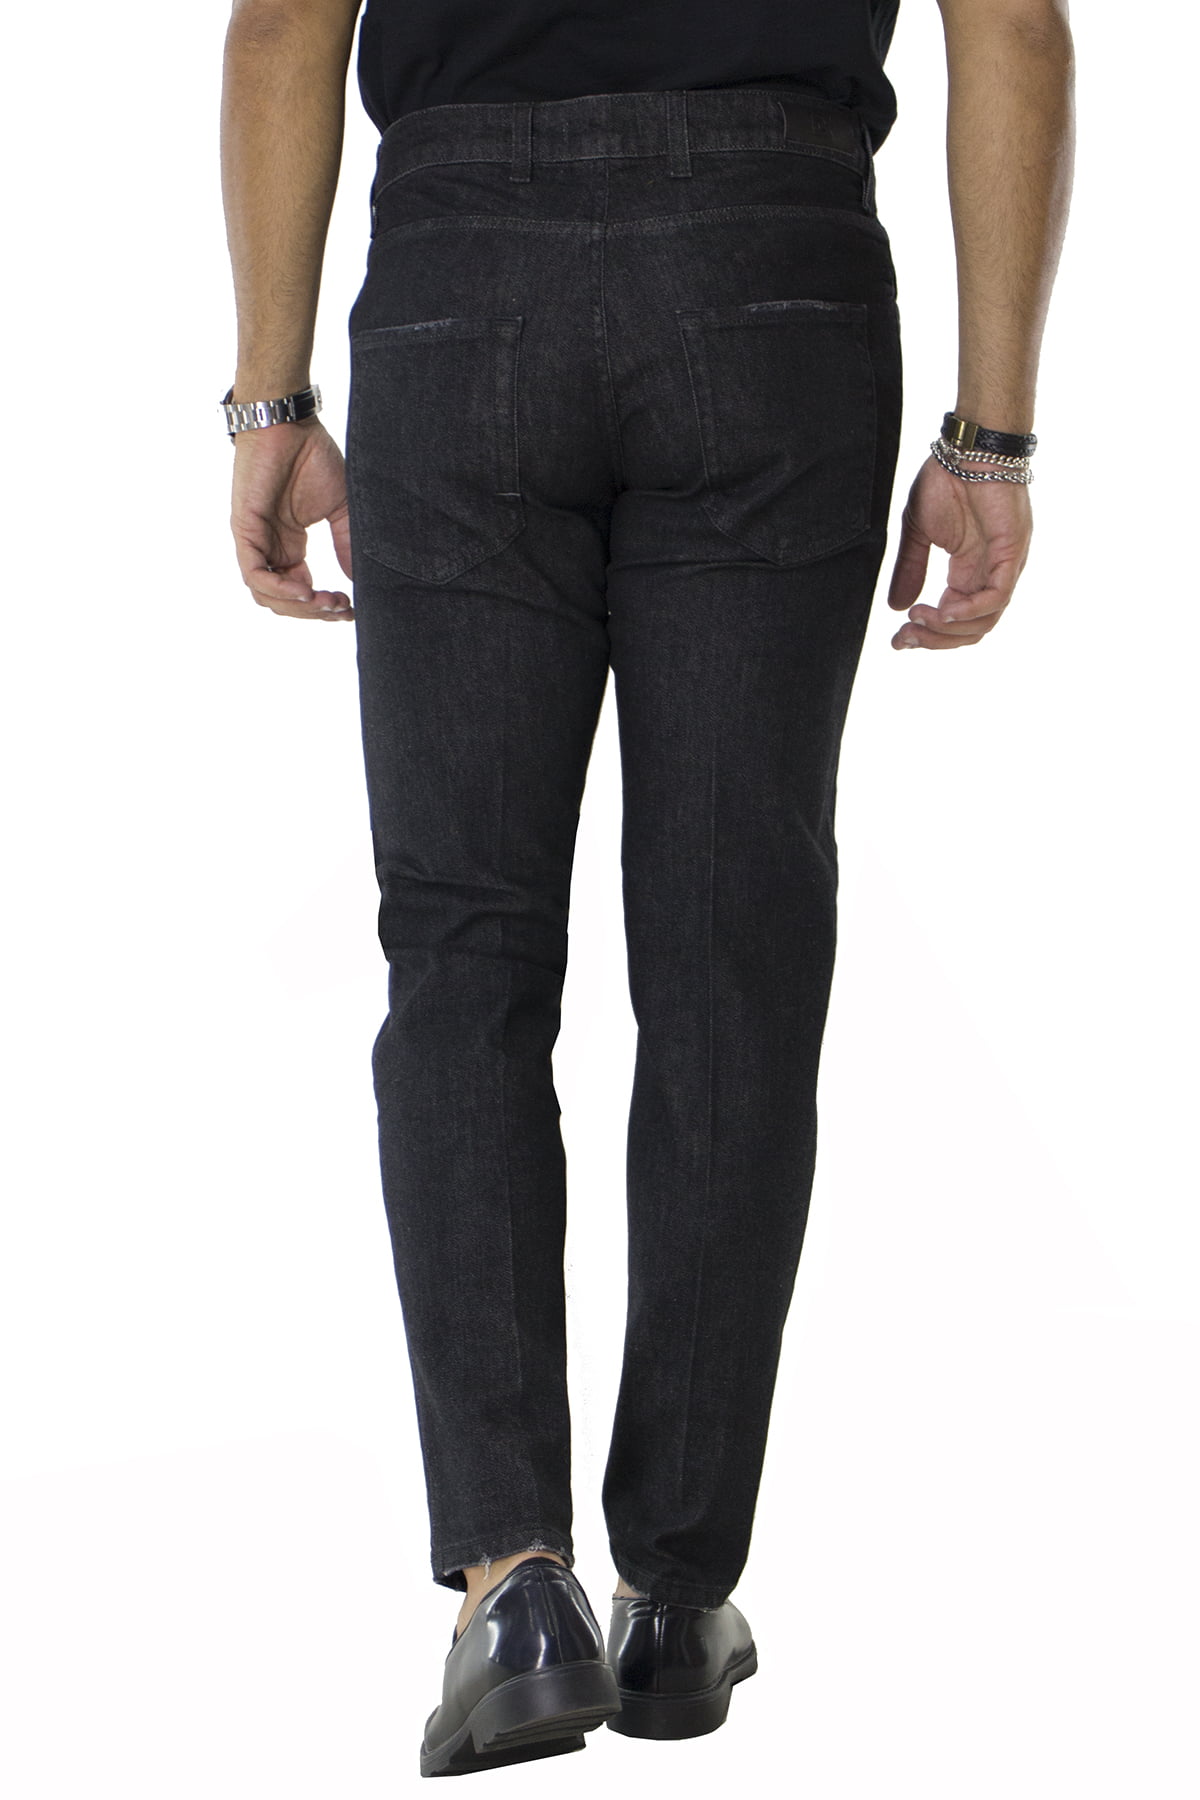 Jeans uomo grigio scuro lavaggio zero tinta unita modello 5 tasche slim fit made in italy